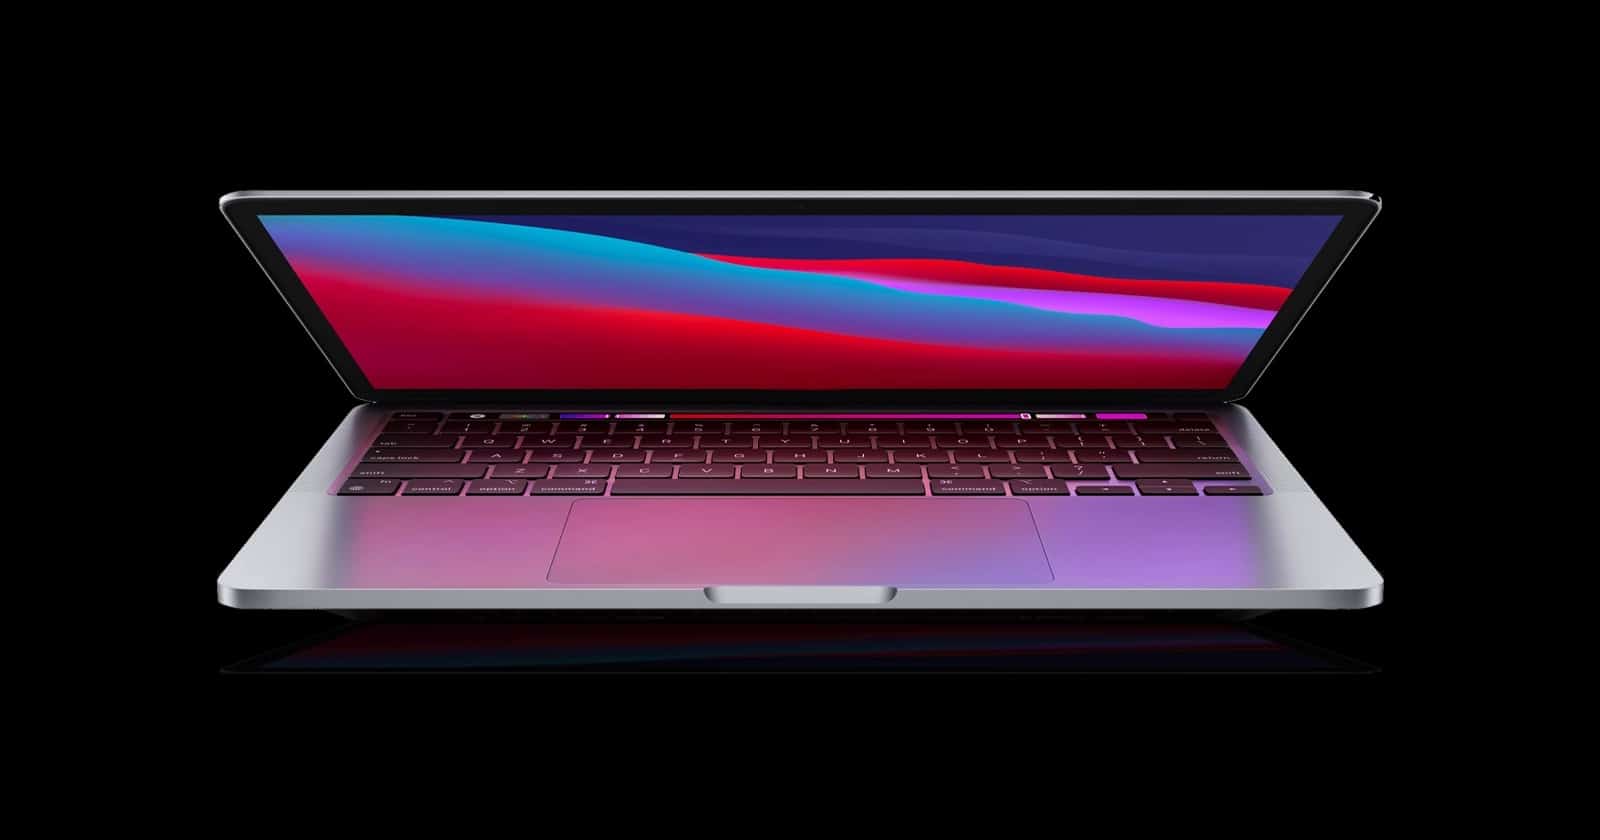 Dường như Apple đã thừa nhận các sai lầm về laptop trong tương lai với MacBook Pro 2021 mới